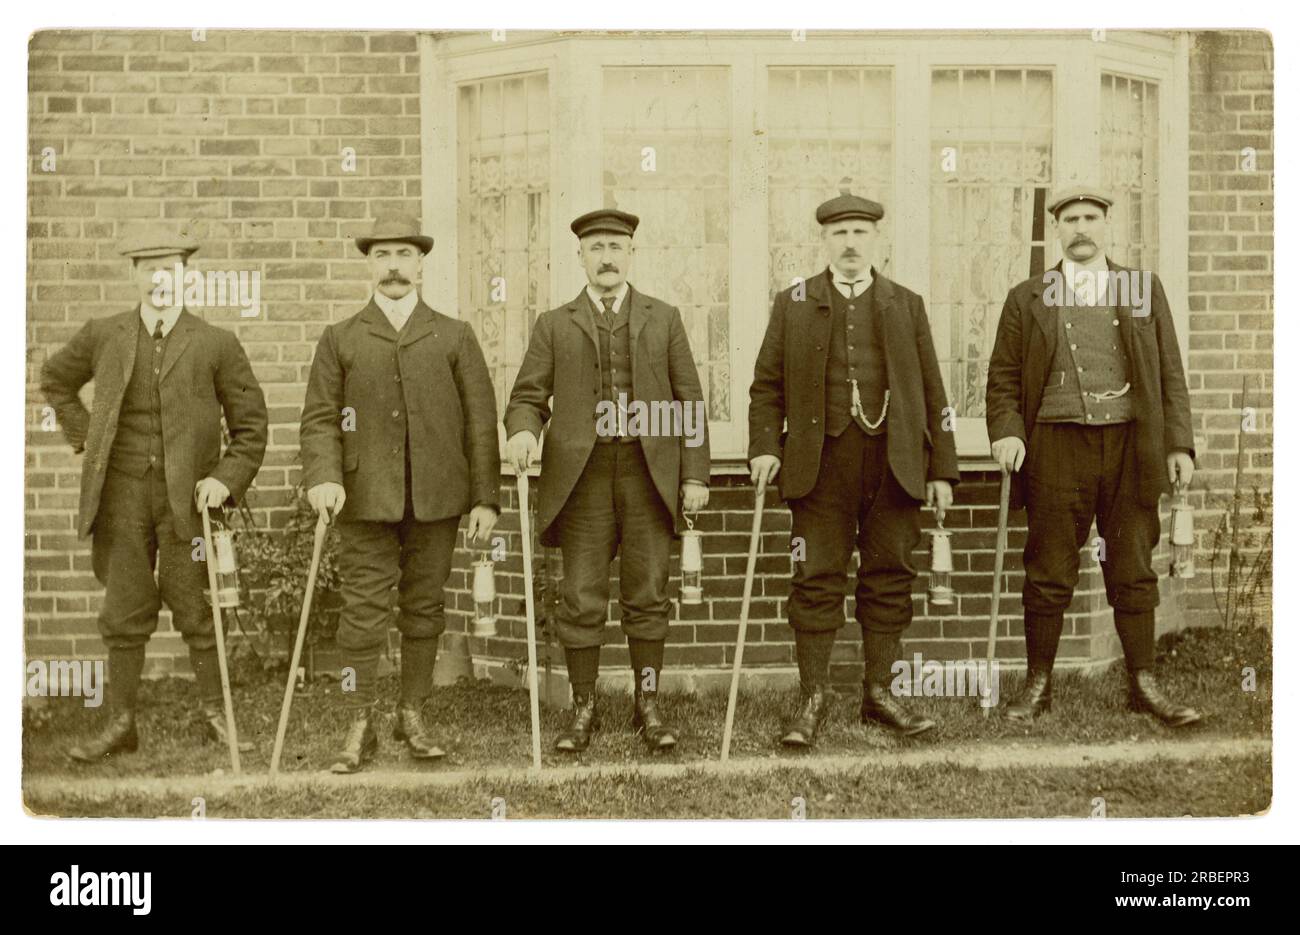 Carte postale originale de l'ère édouardienne de 5 hommes posant pour une photographie ensemble, portant des lampes de sécurité de mineurs, habillés le dimanche le mieux pour une promenade, peut-être des mineurs allant pour une randonnée le dimanche, peut-être des travailleurs de domaine. Circa 1910 Royaume-Uni Banque D'Images